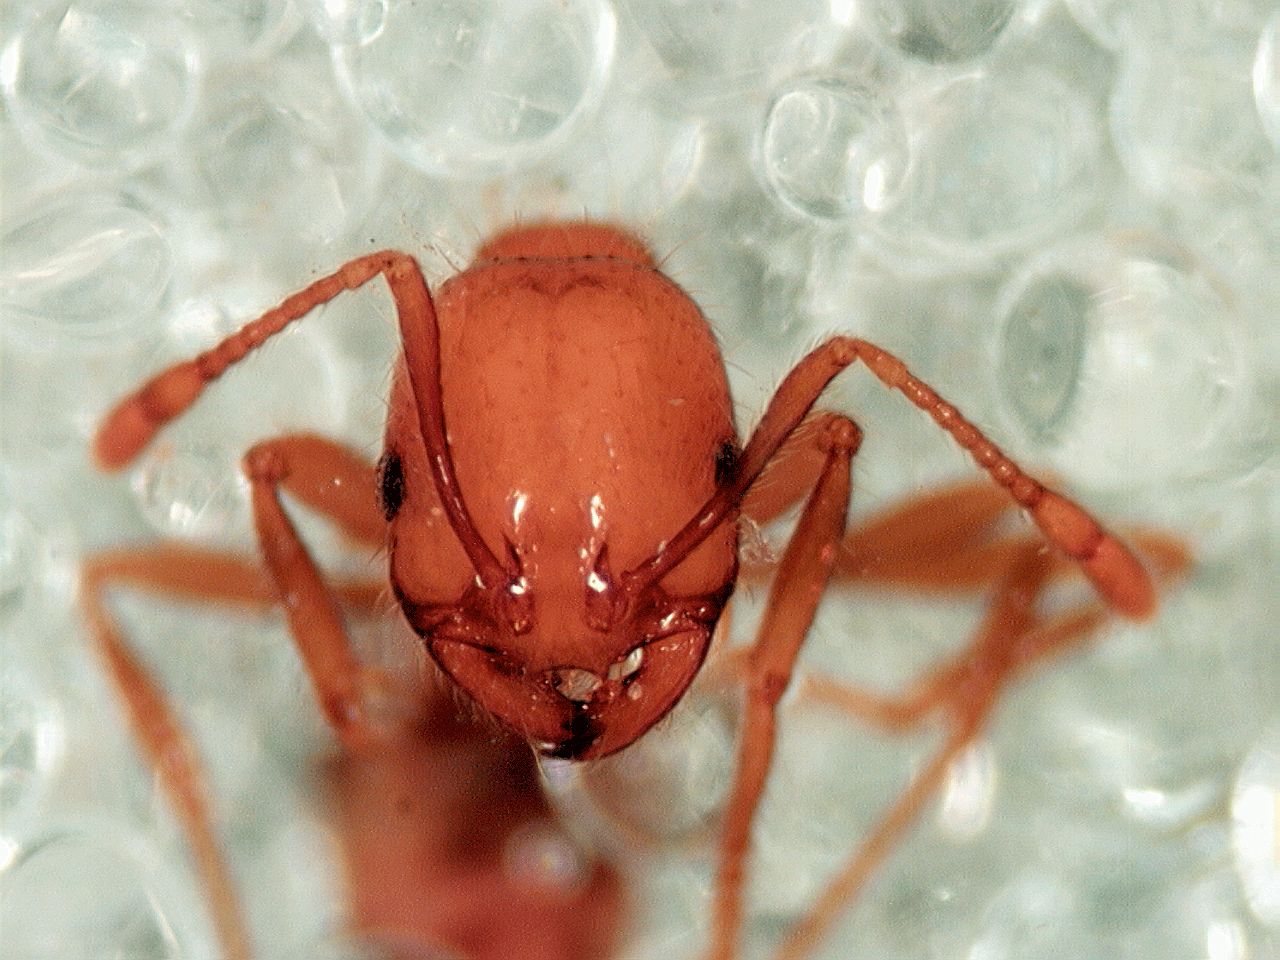 Descubren que las hormigas rojas podrían ayudar a tratar la psoriasis